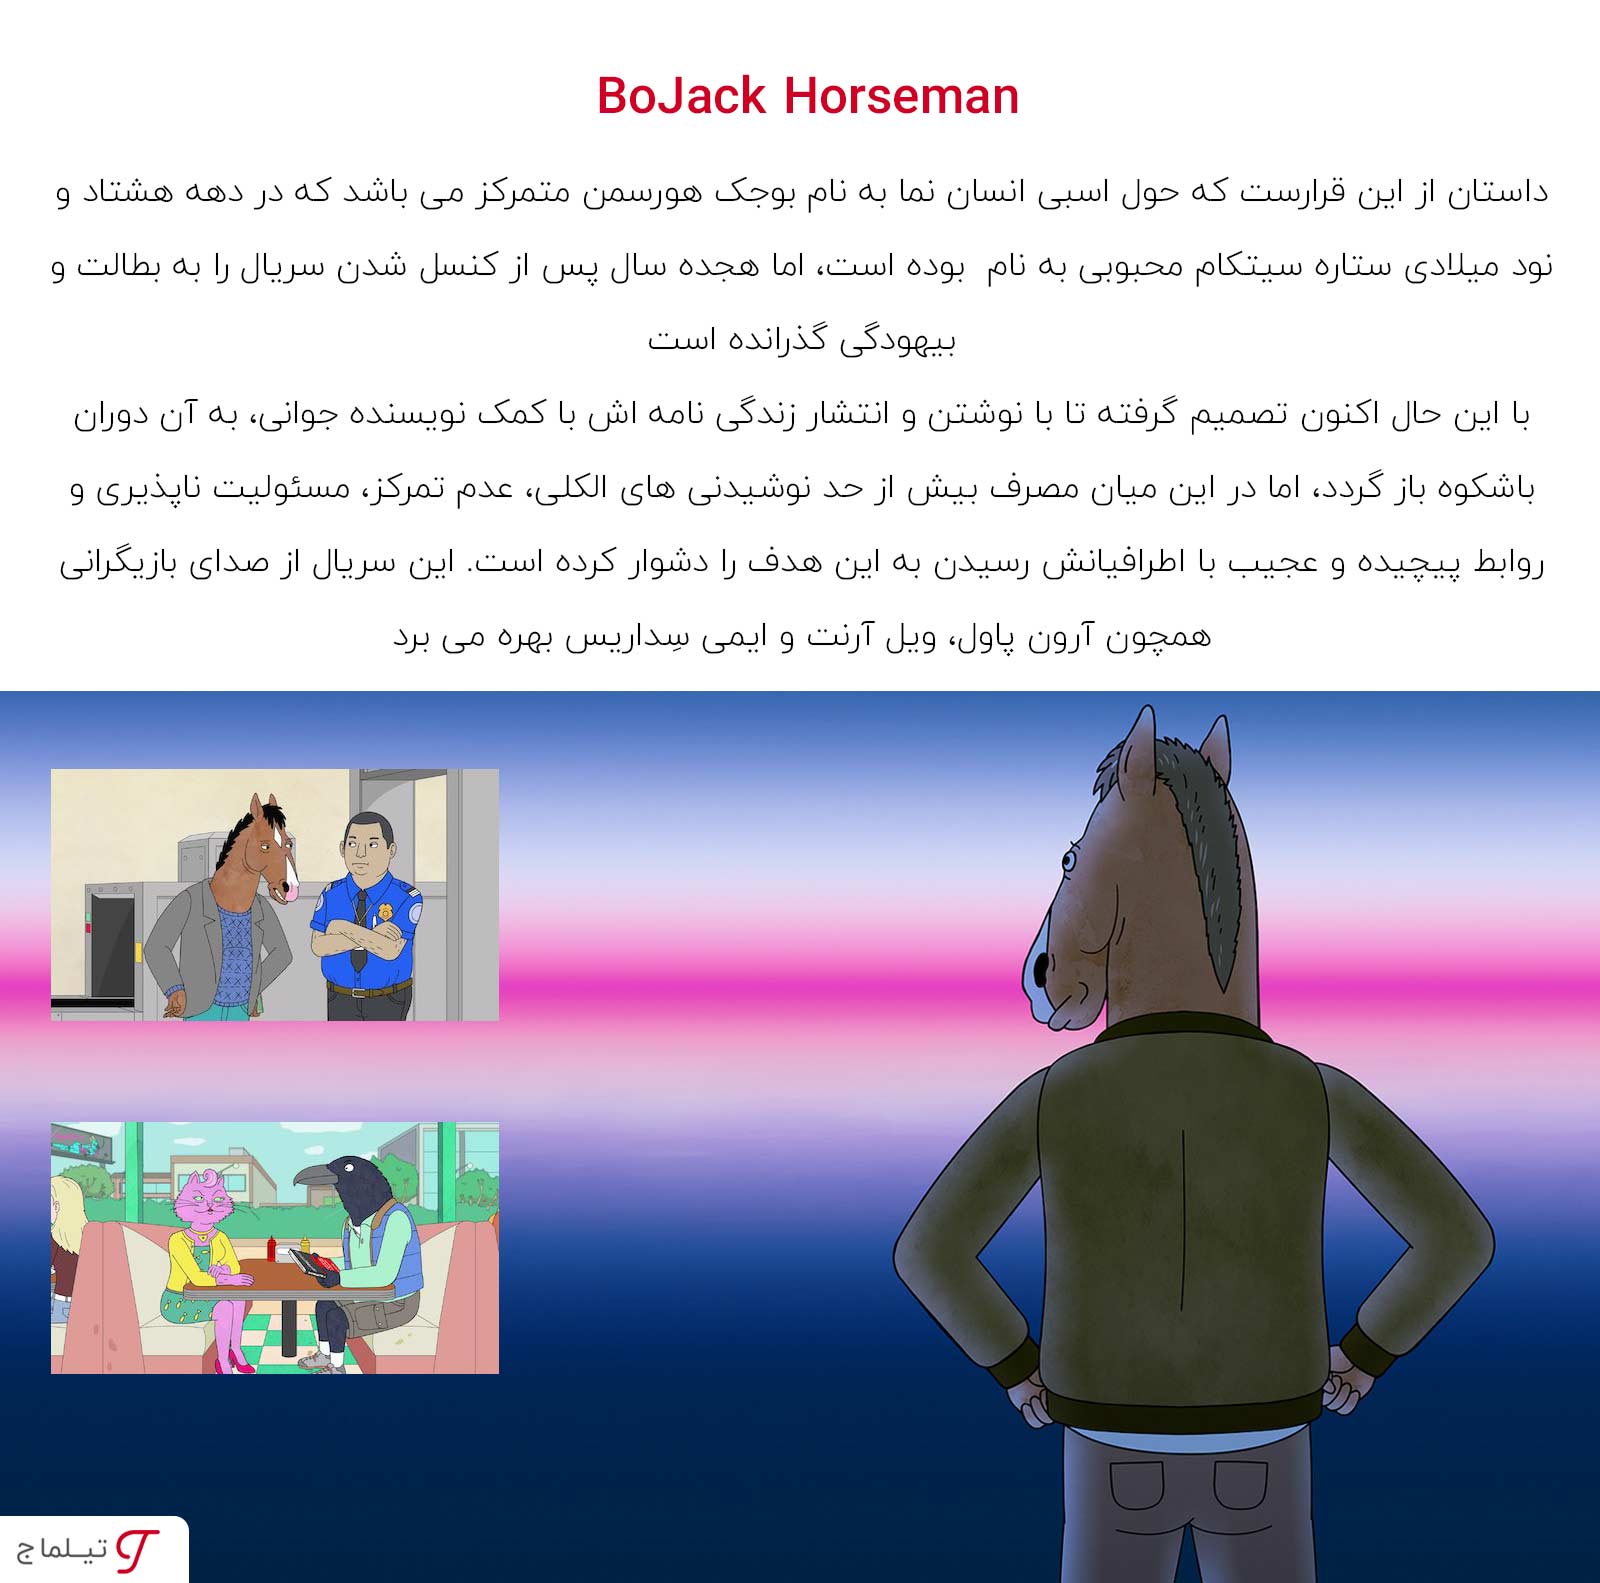 خلاصه داستان سریال BoJack Horseman